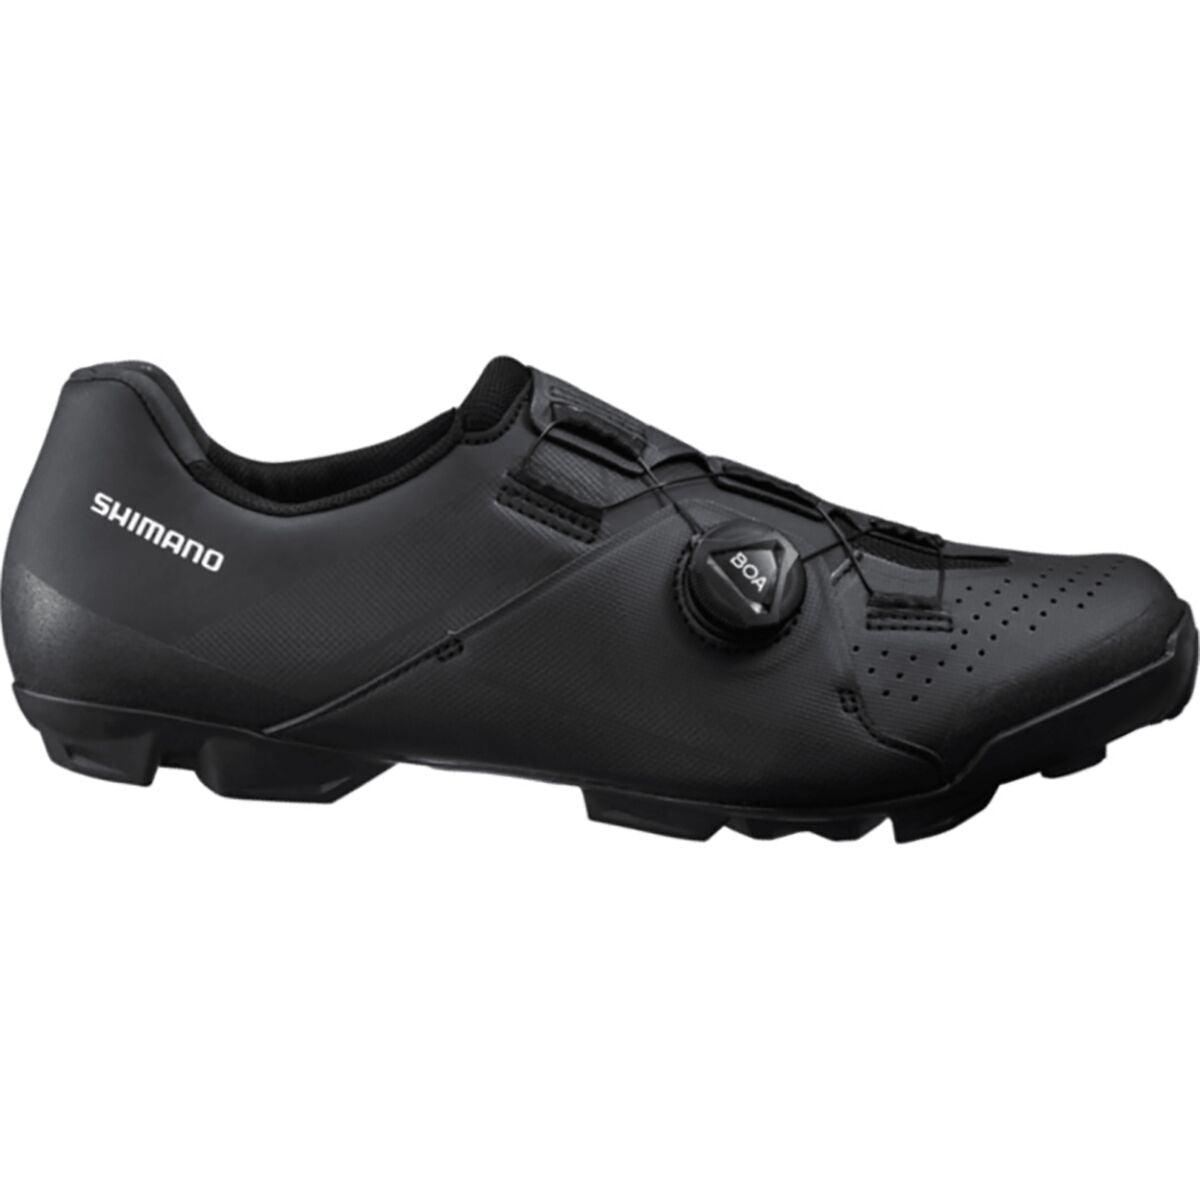 Photos - Cycling Shoes Shimano XC3 Mountain Bike Shoes - Black - 48 ESHXC300MGL01S4800G 